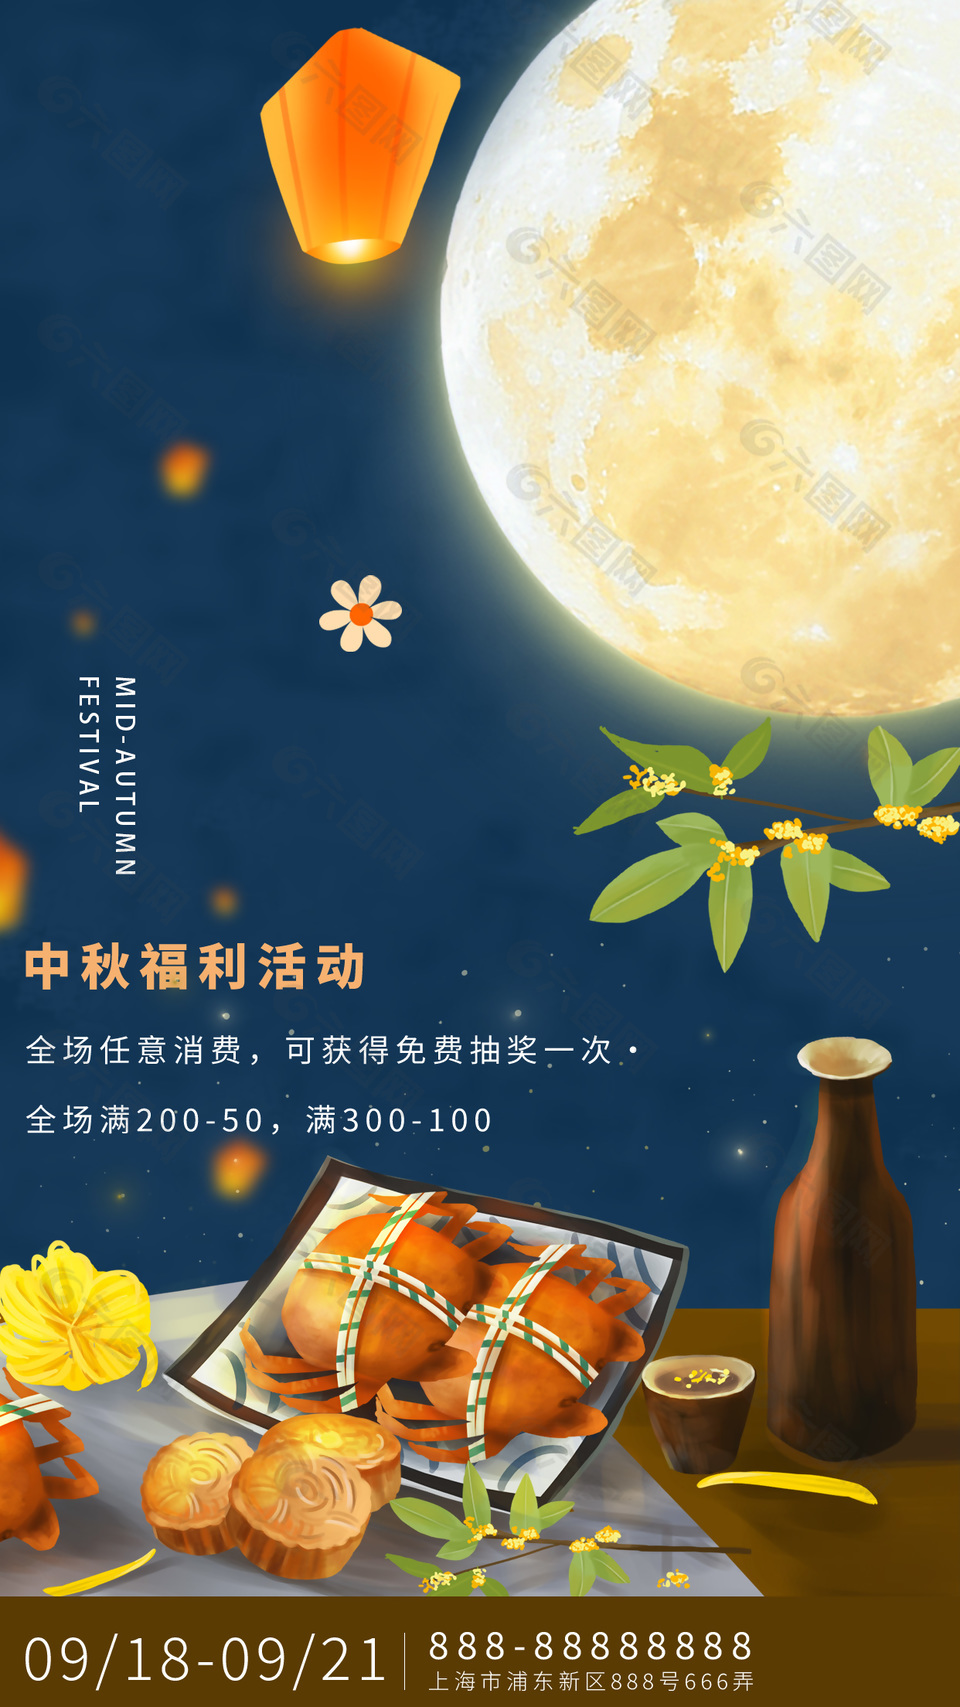 传统佳节中秋福利活动手绘插画海报下载